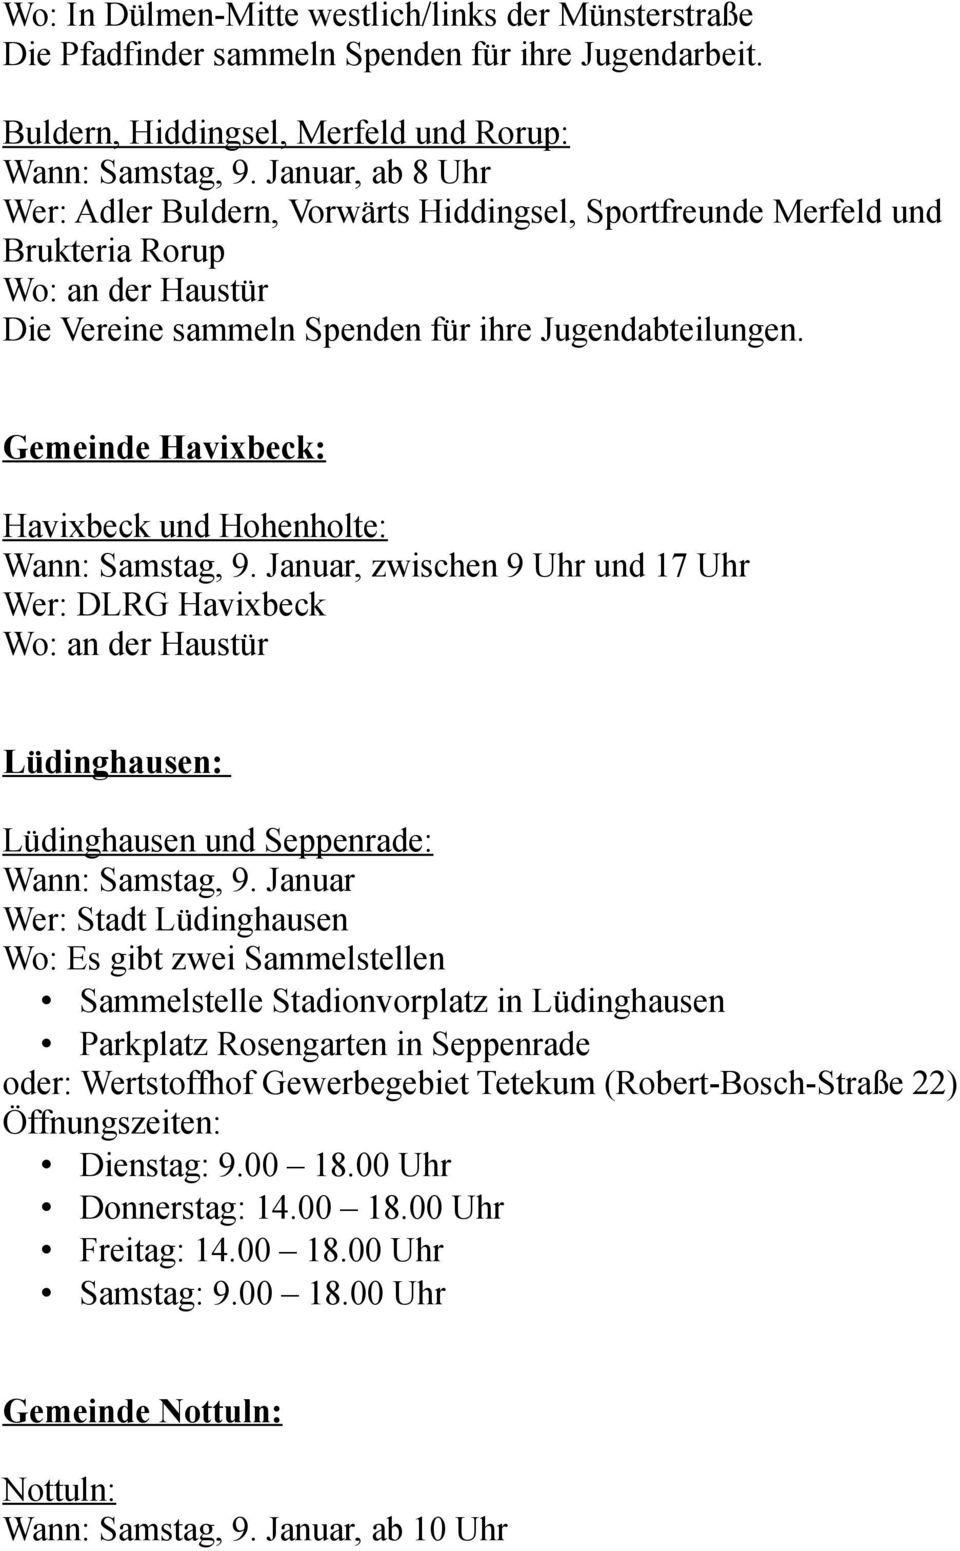 Gemeinde Havixbeck: Havixbeck und Hohenholte: Wann: Samstag, 9. Januar, zwischen 9 Uhr und 17 Uhr Wer: DLRG Havixbeck Lüdinghausen: Lüdinghausen und Seppenrade: Wann: Samstag, 9.